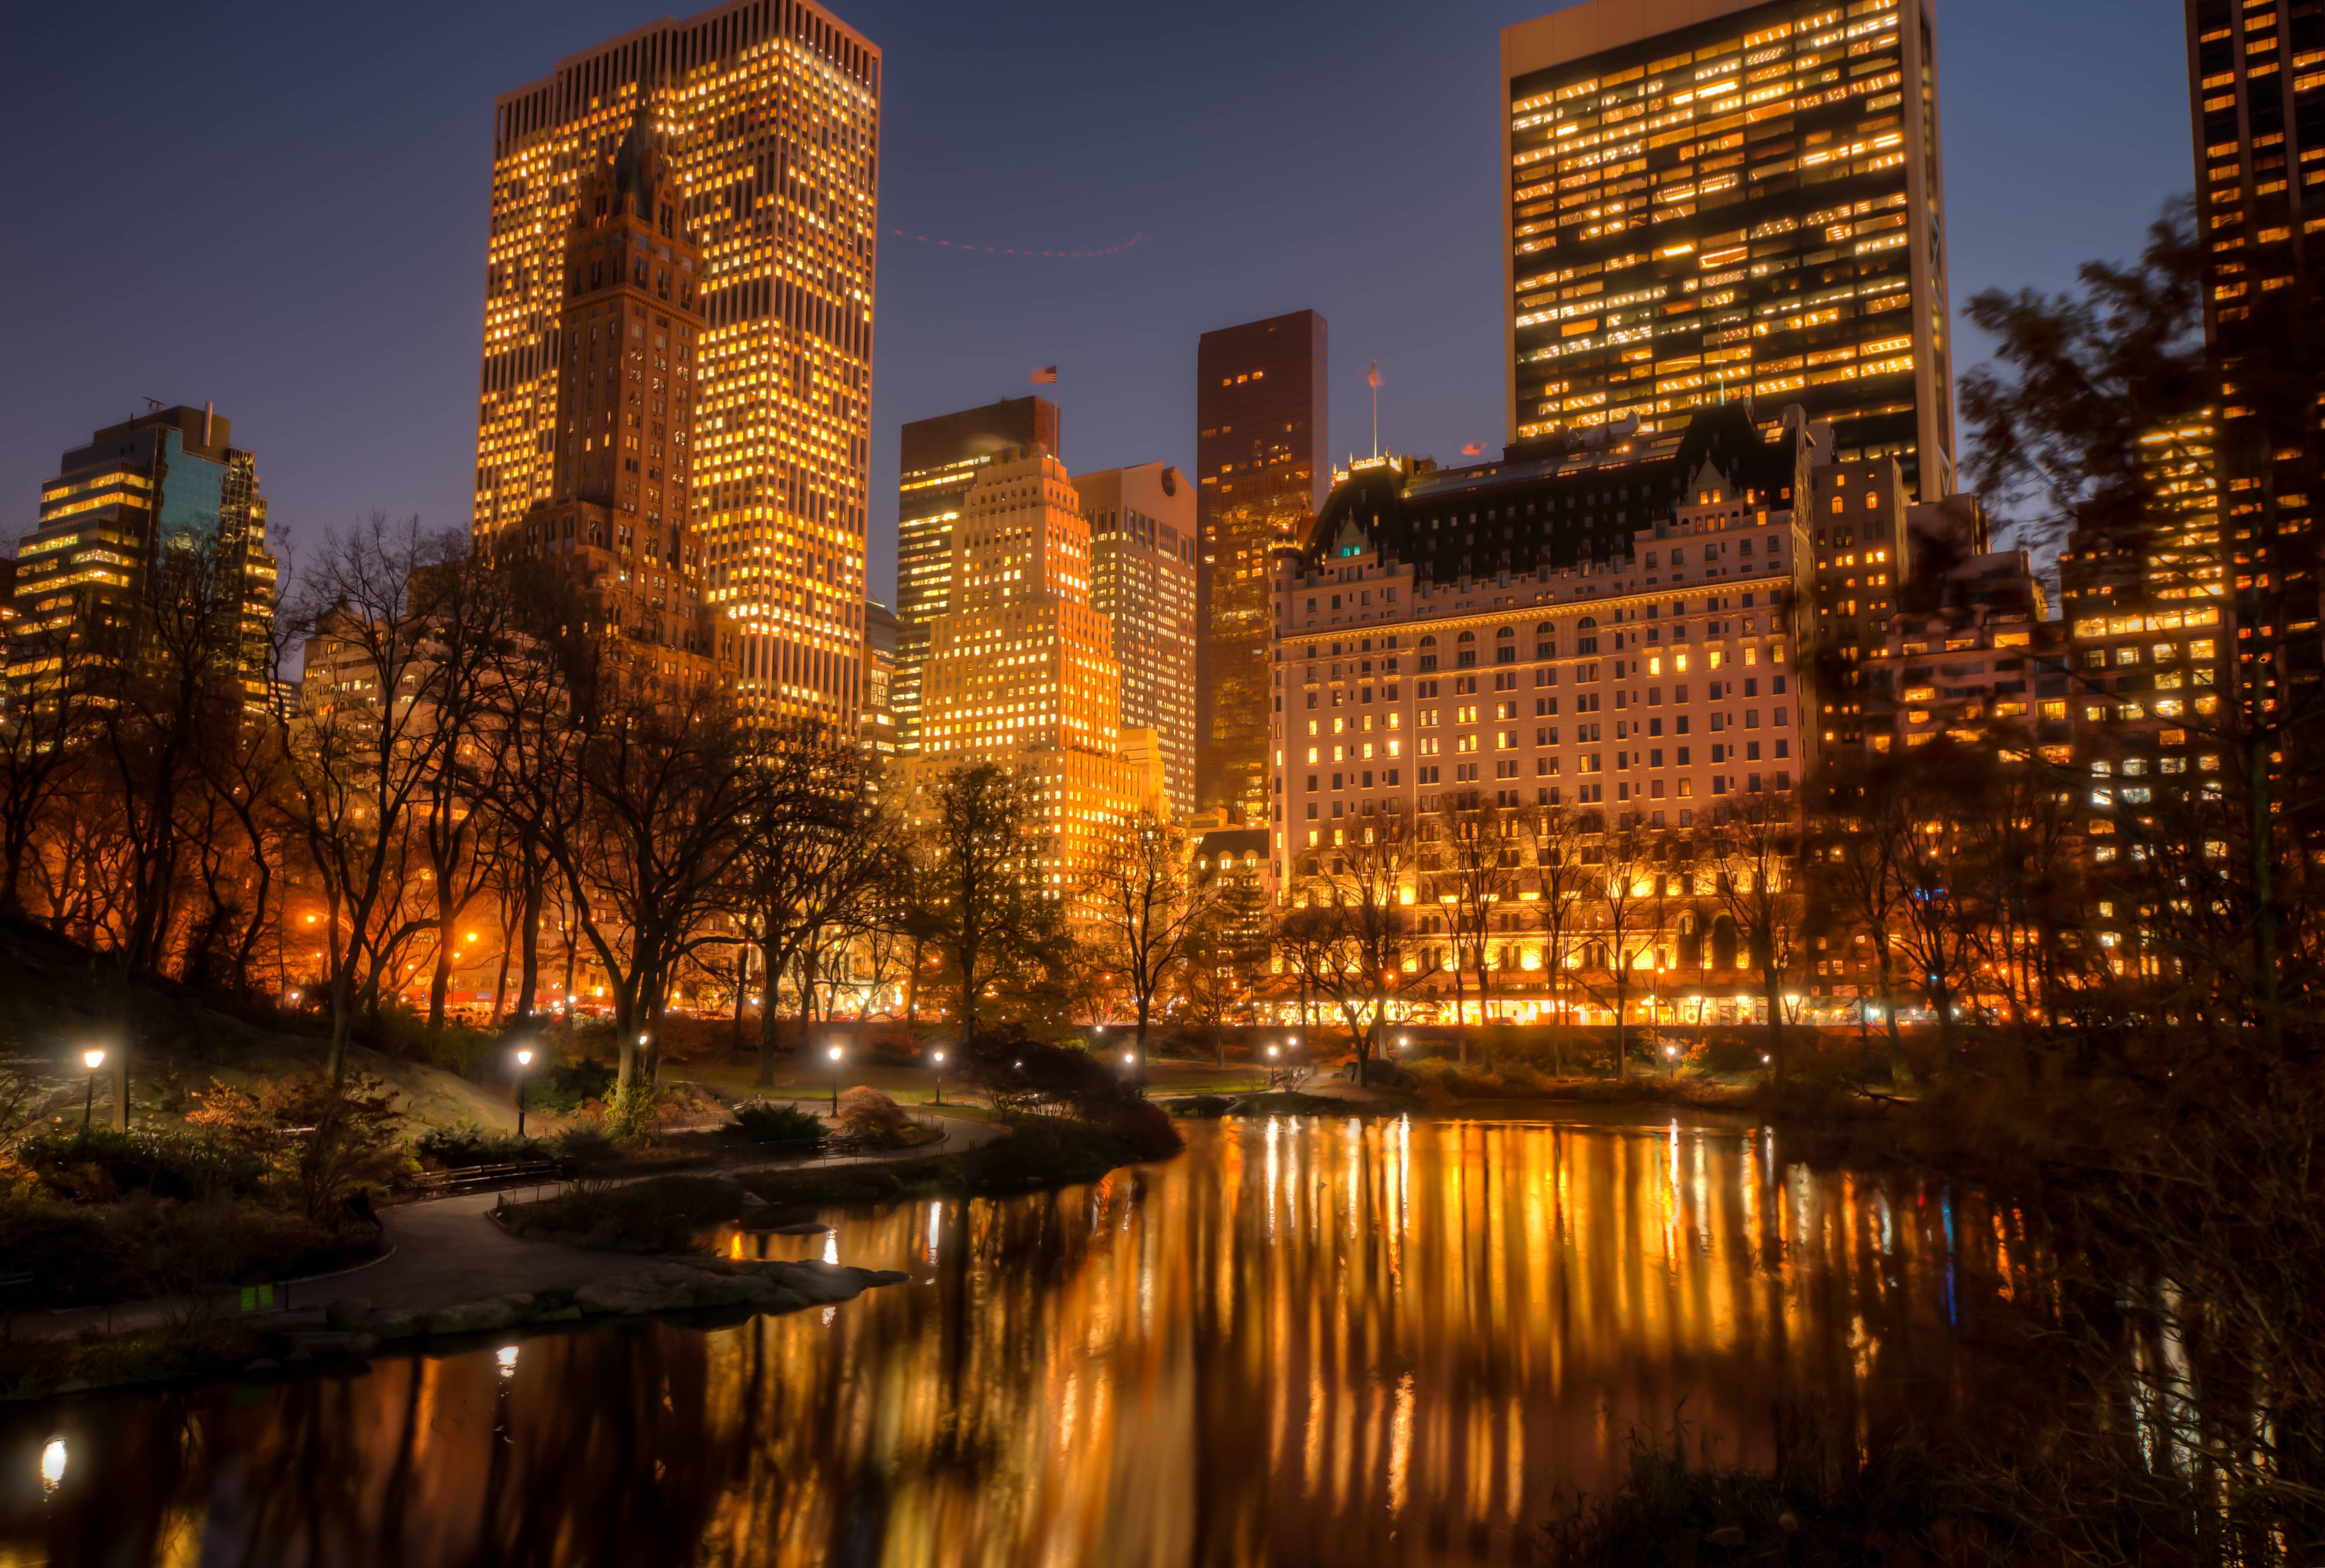 New York city photo for desktop wallpaper